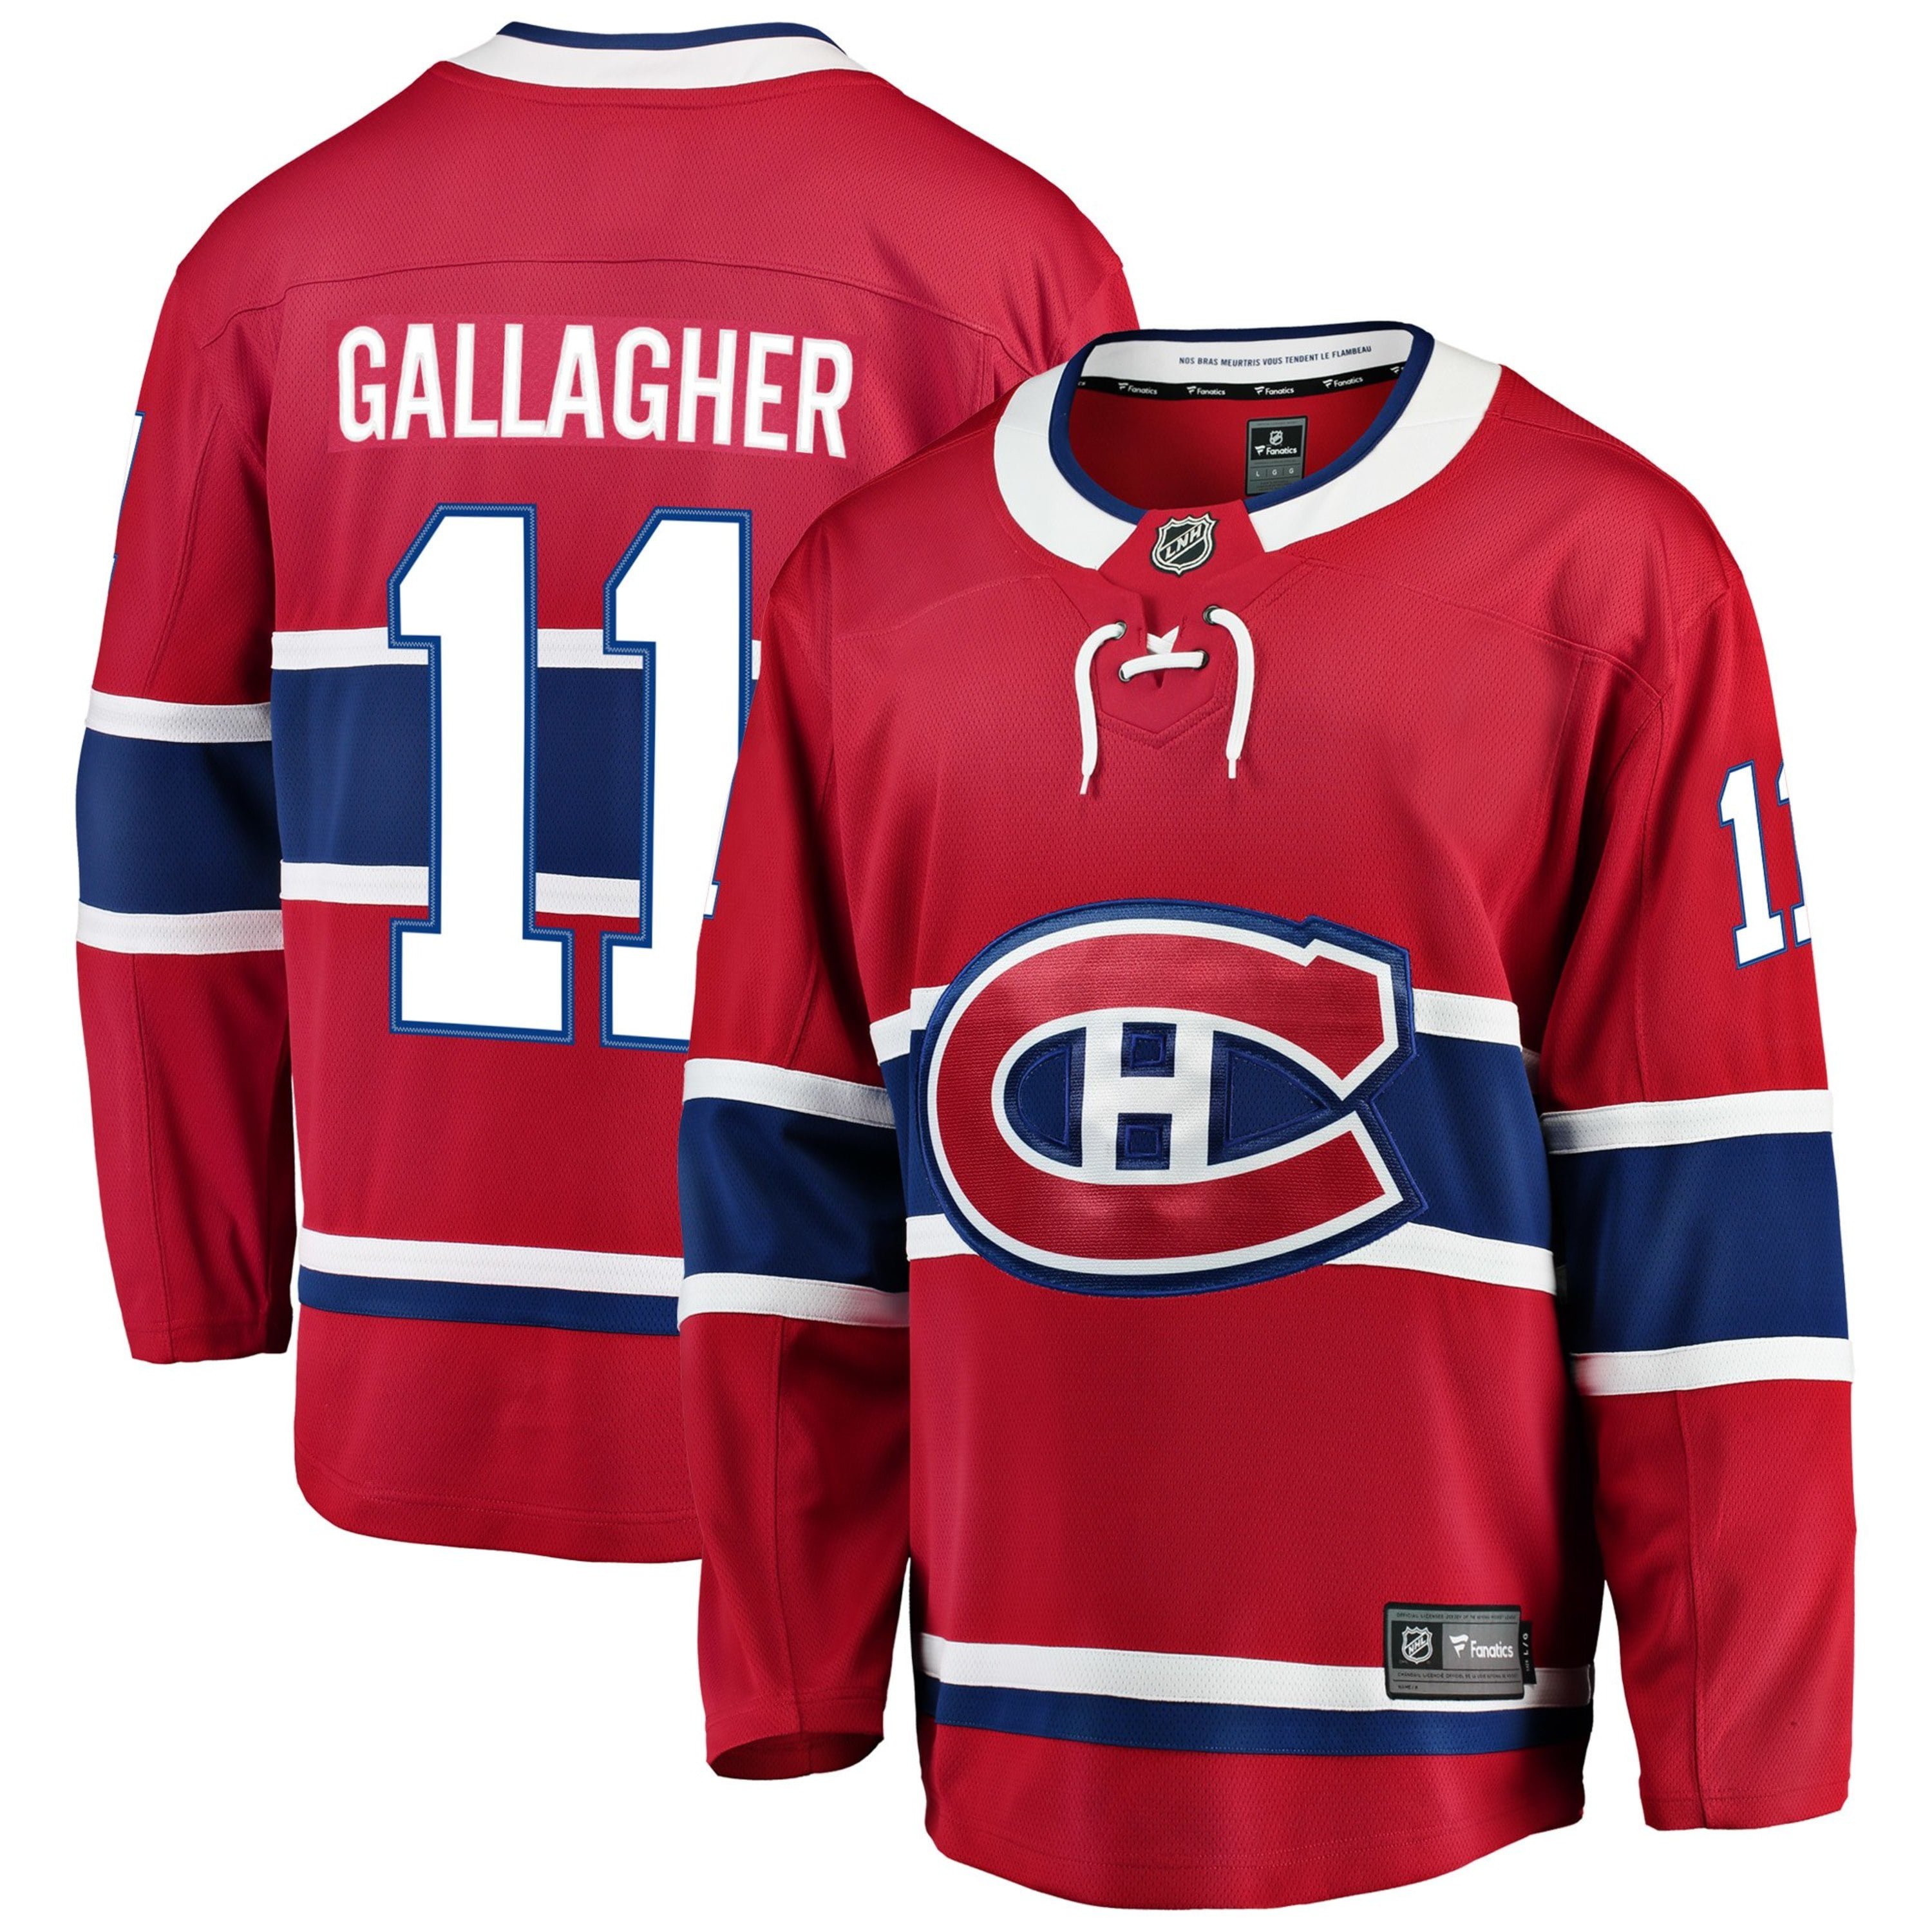 gallagher jersey